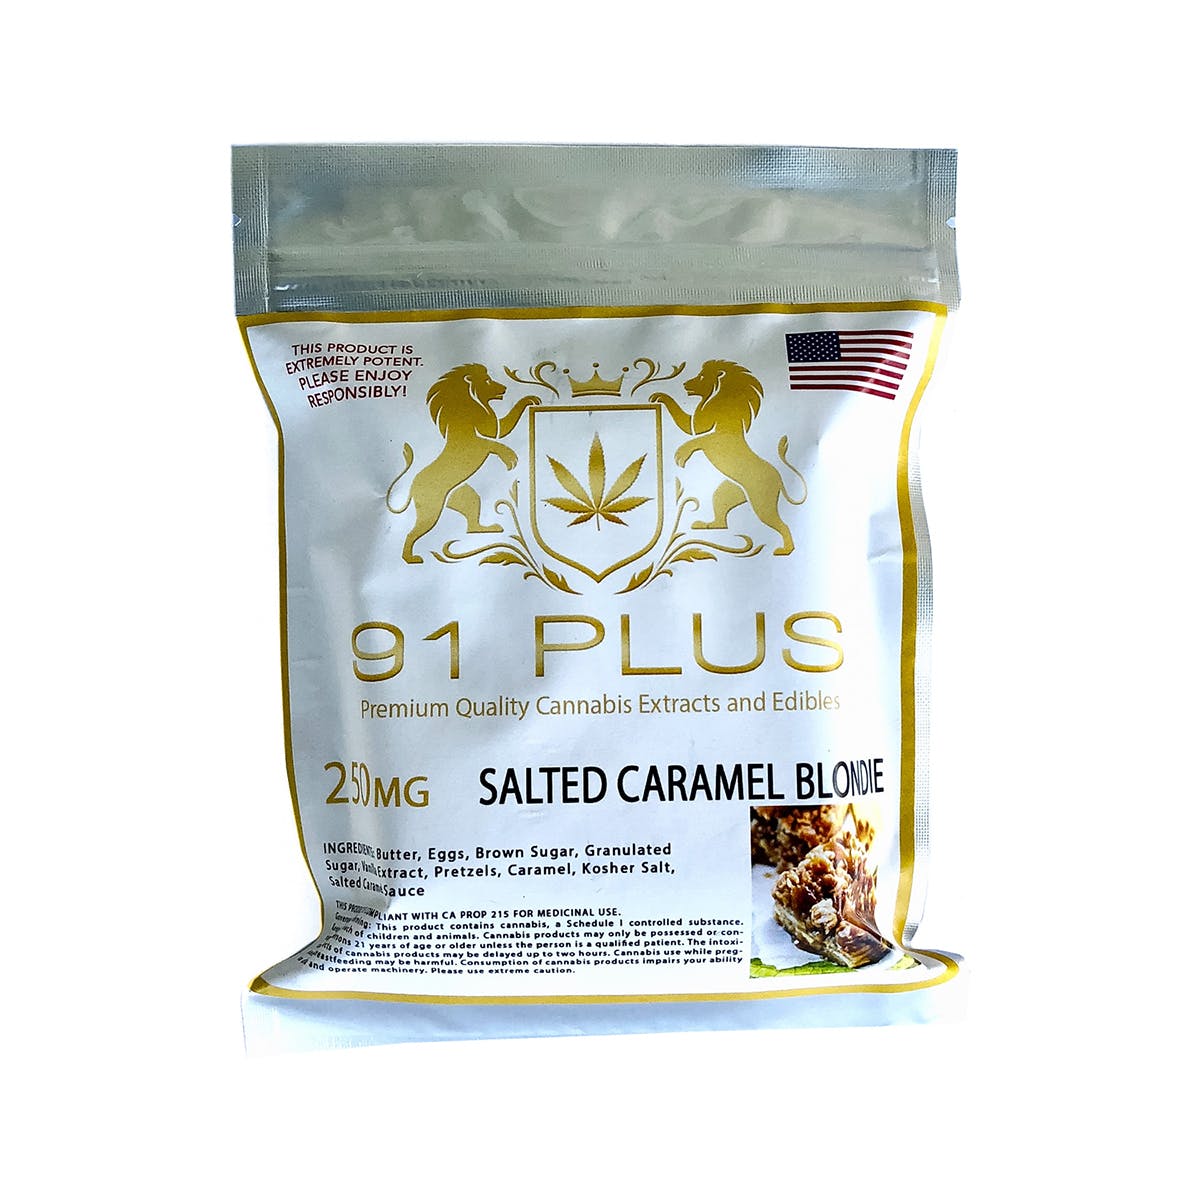 Salted Caramel Blondie 250mg